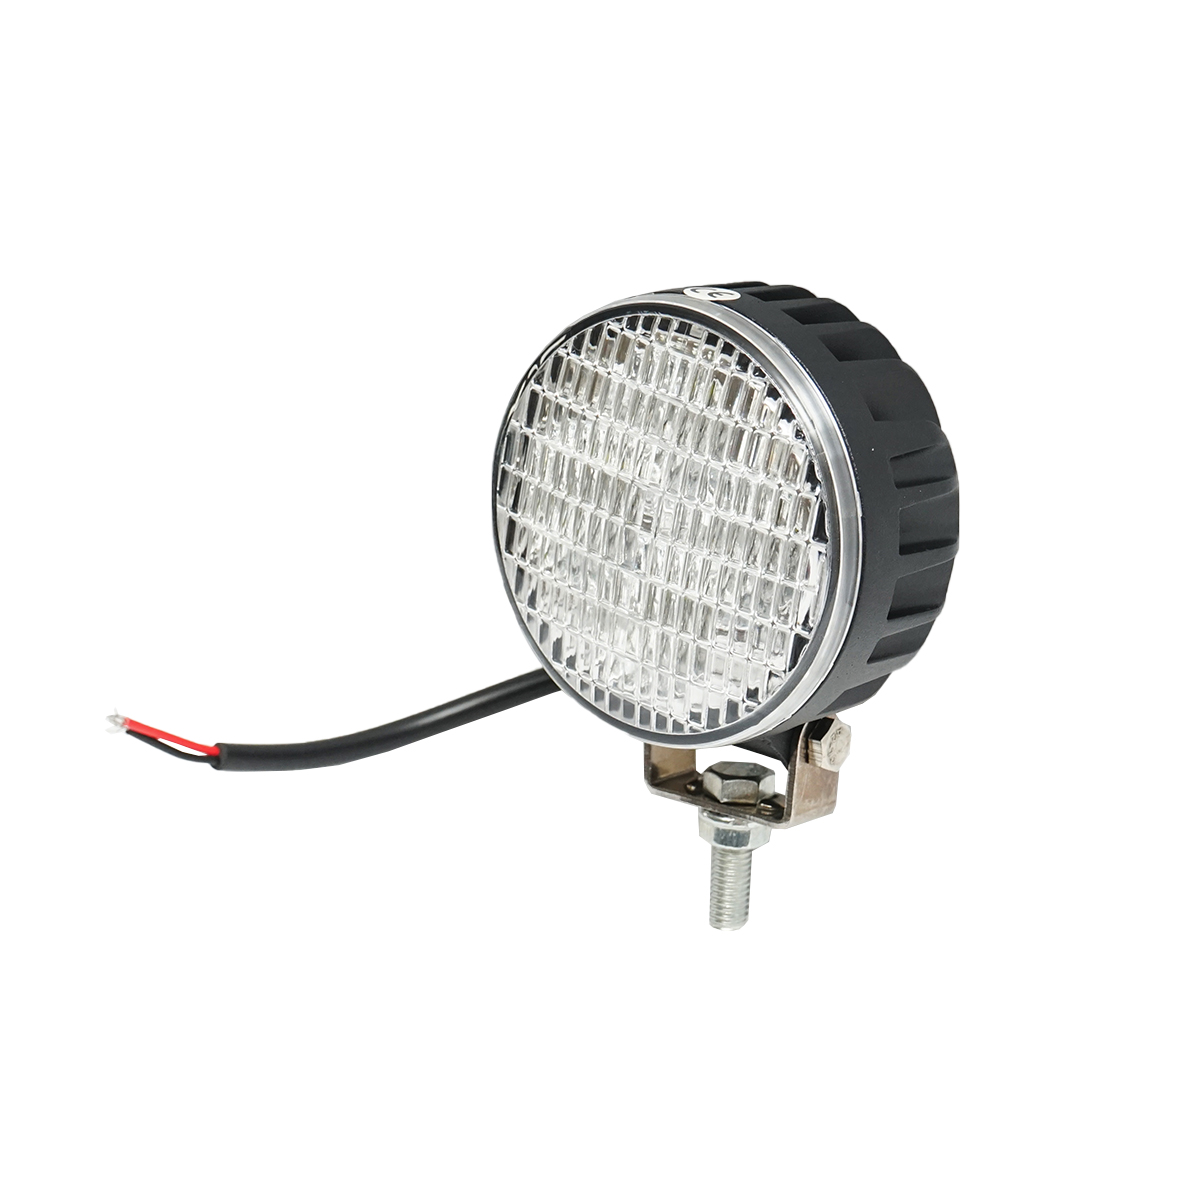 Lampa 4 LED-uri 10-30V 12W unghi de radiere 60 grade